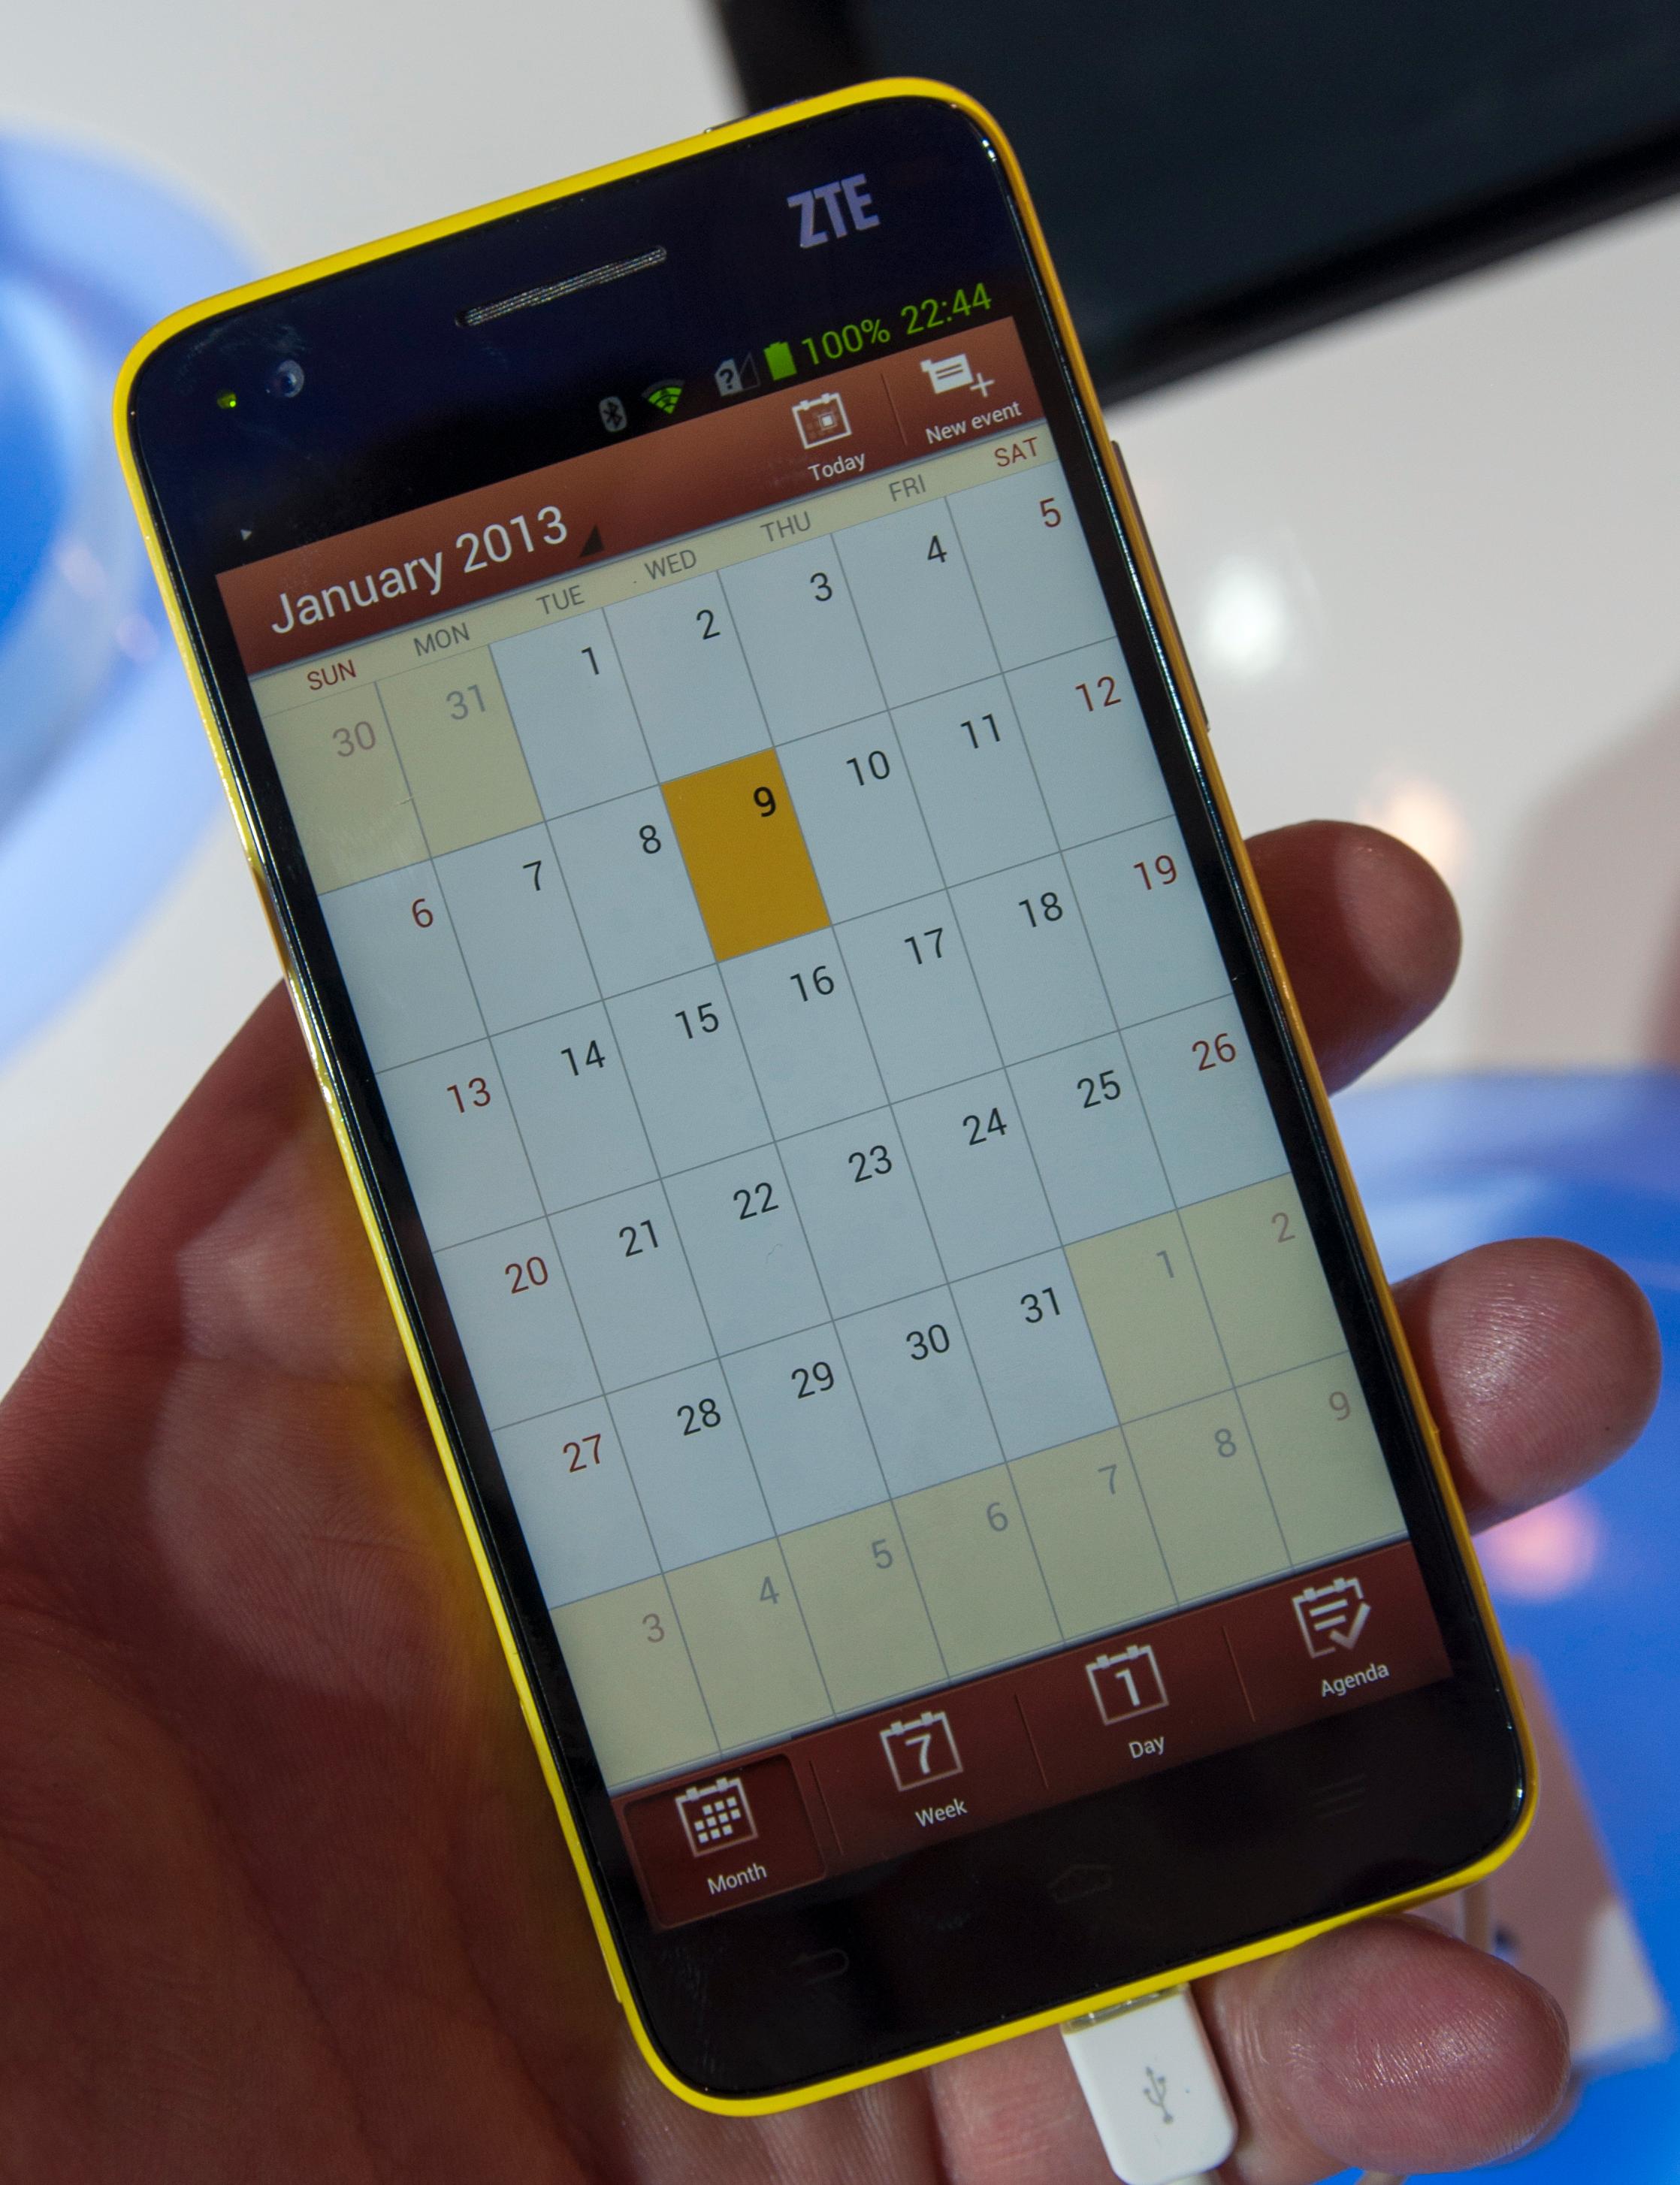 Kalenderen har blitt frisket opp voldsomt i forhold til standardkalenderen i Android.Foto: Finn Jarle Kvalheim, Amobil.no